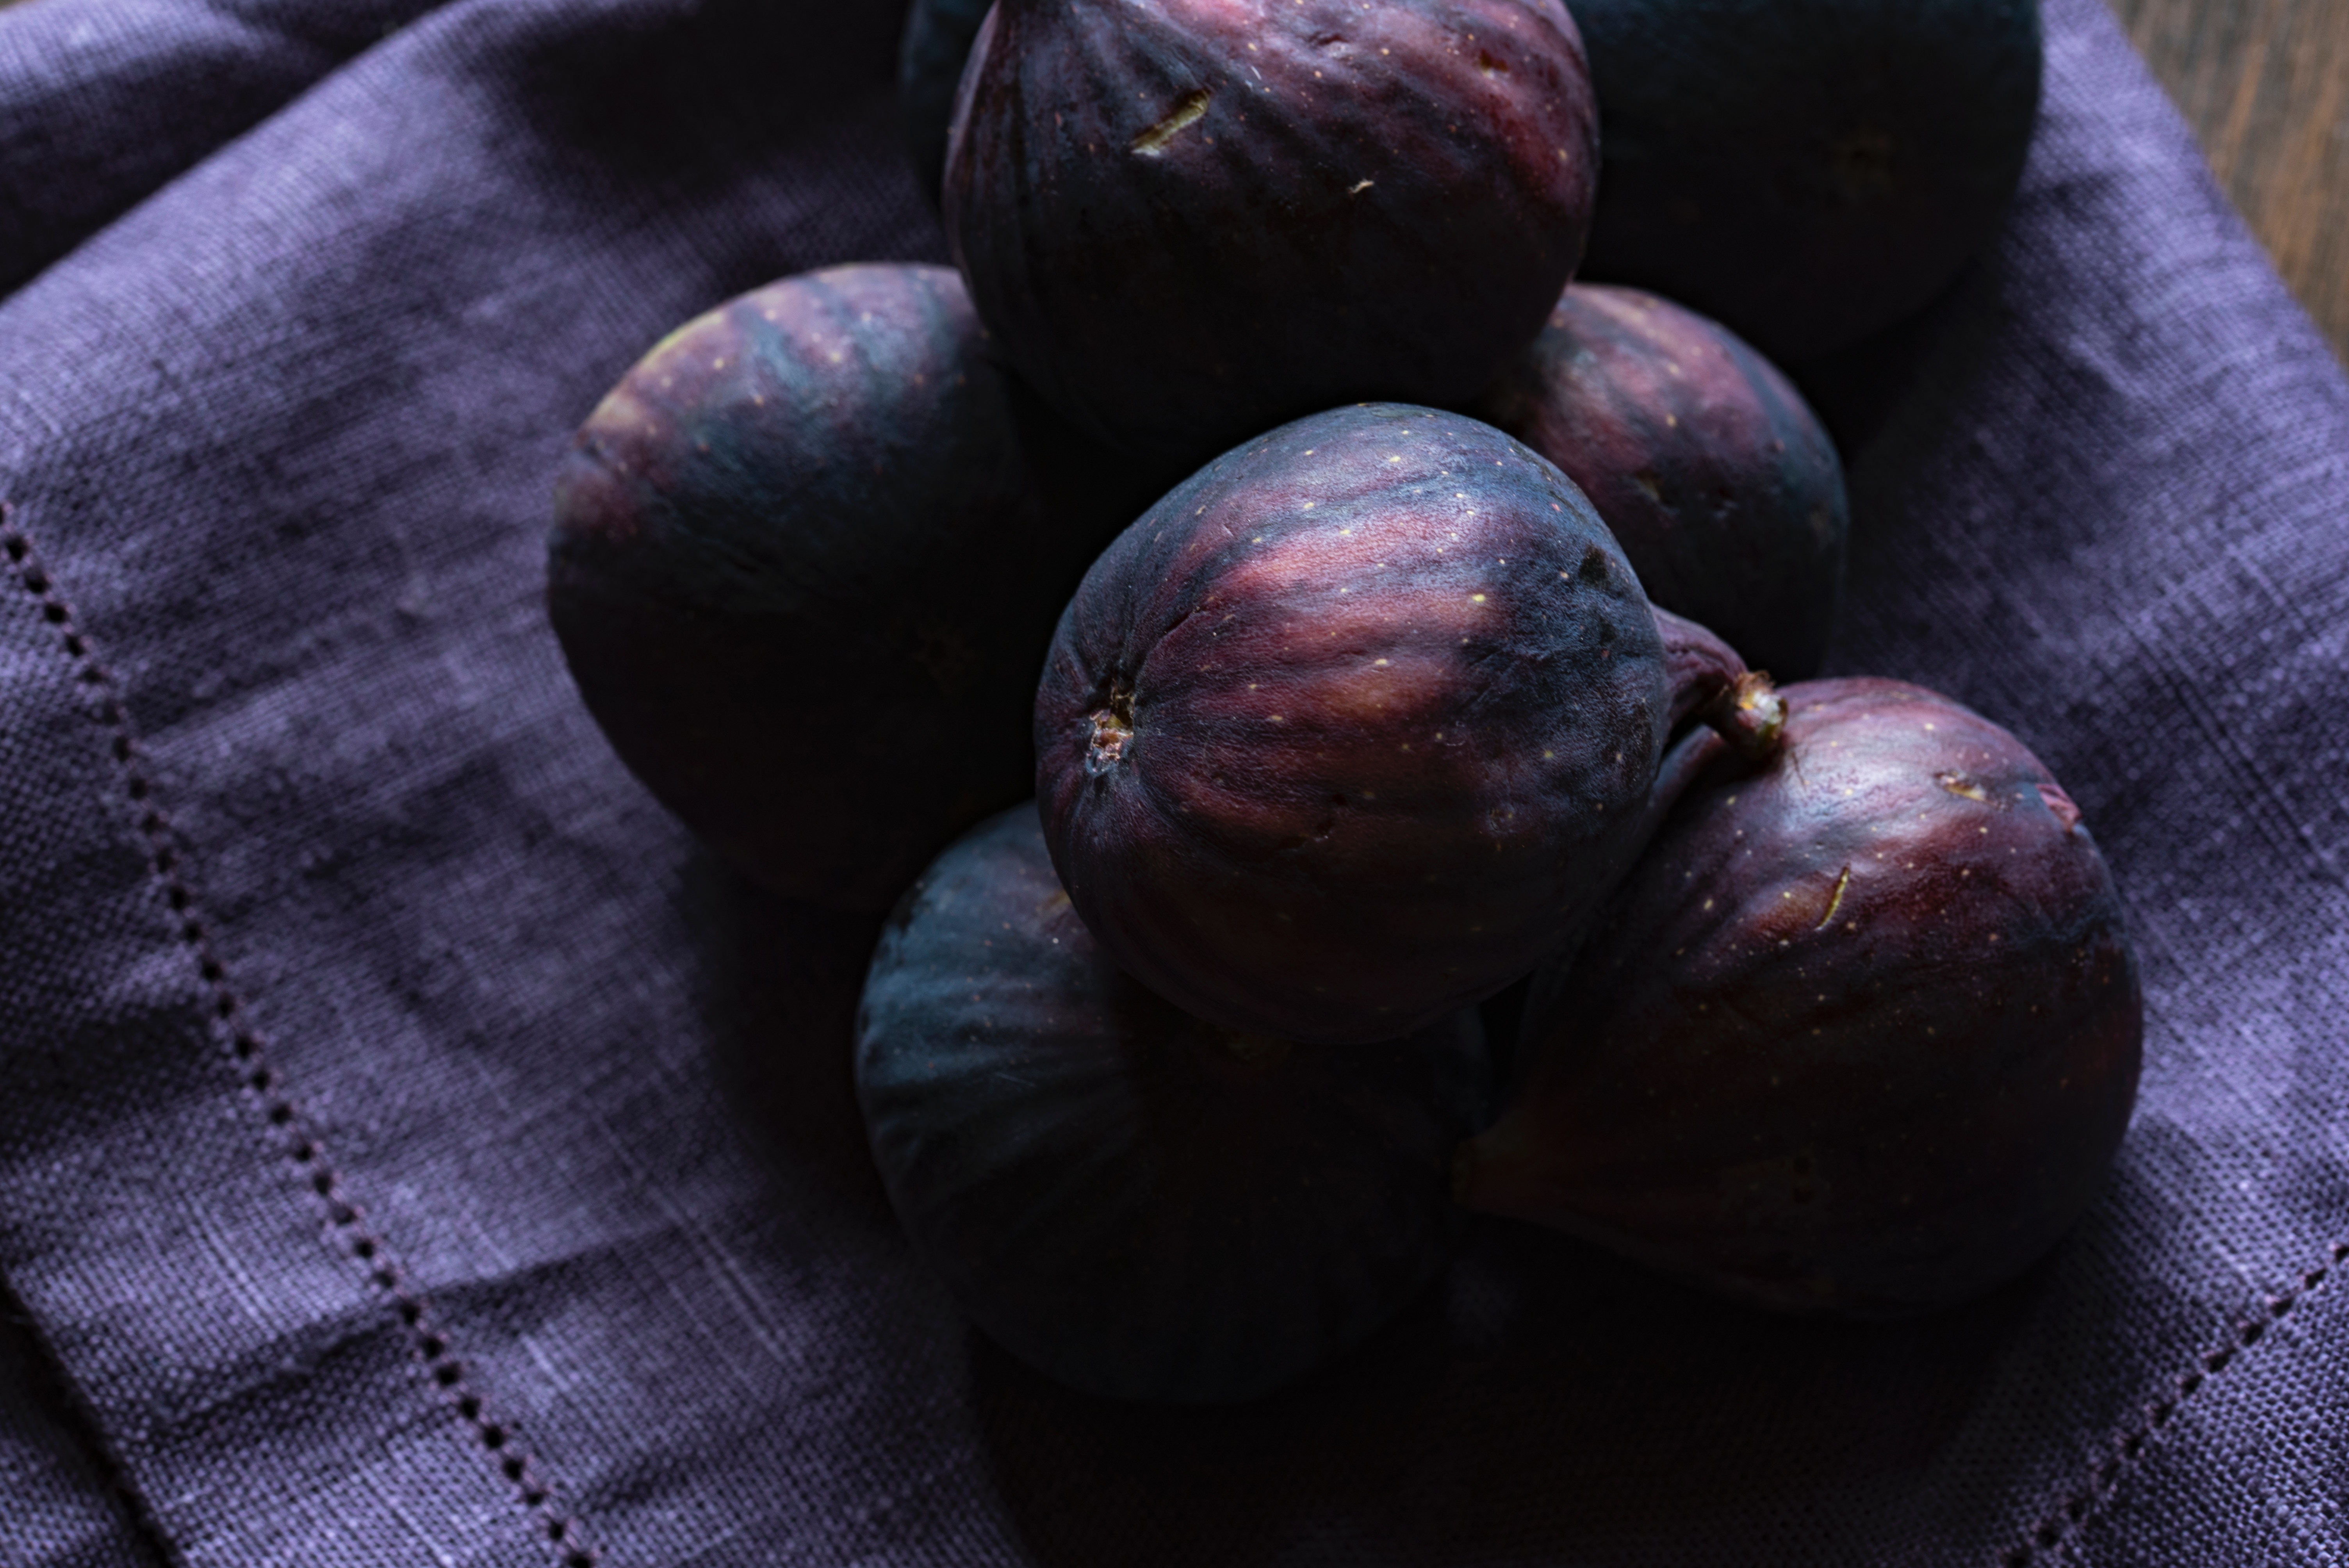 Purple figs on purple cloth